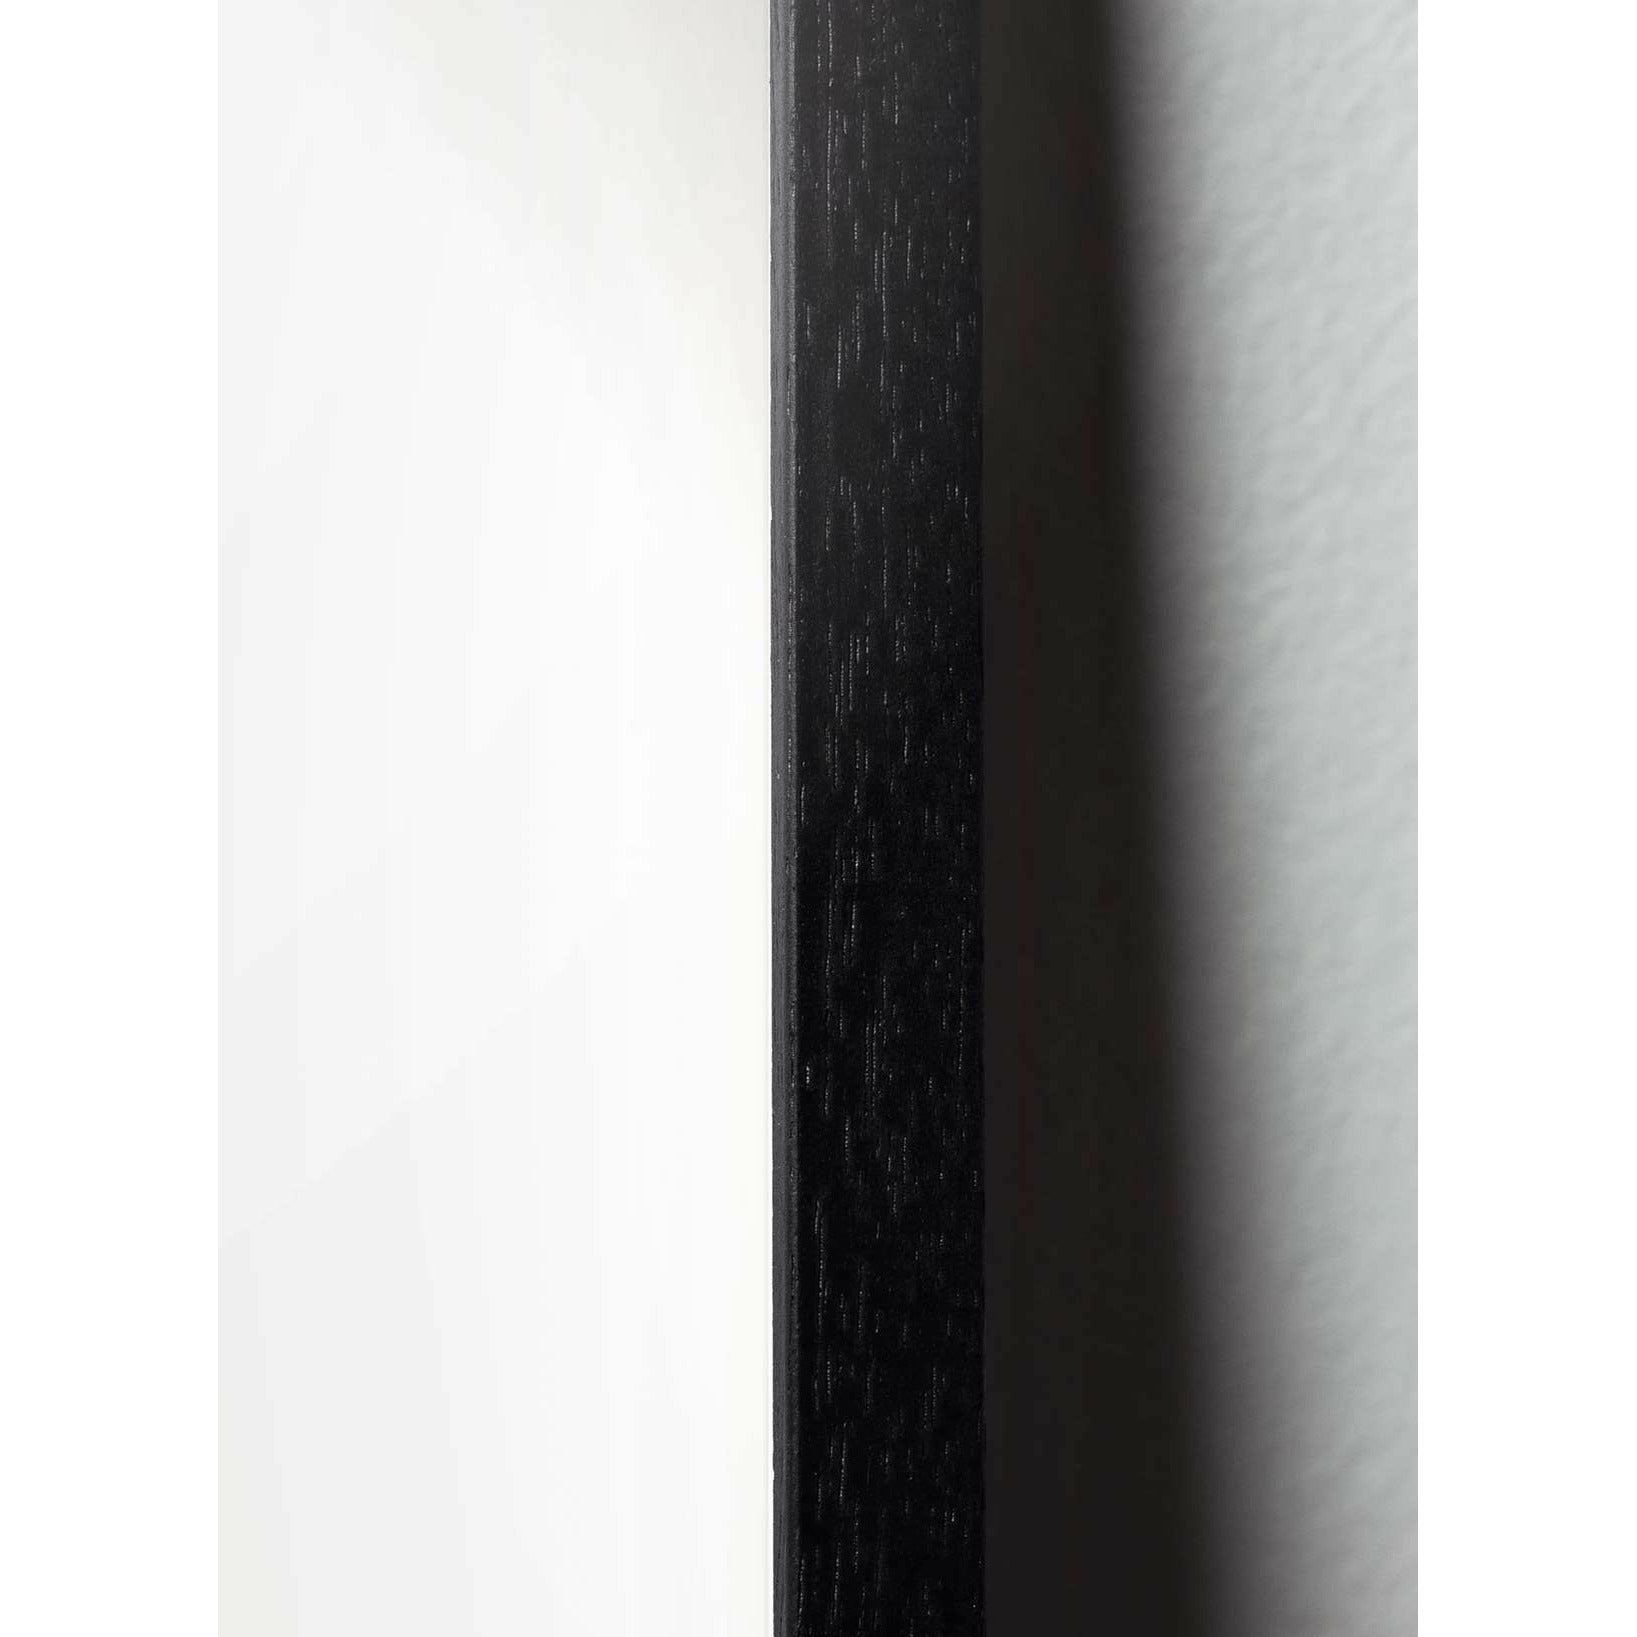 Pomysły plakat jaja, rama wykonana z czarnego lakierowanego drewna 50x70 cm, brązowy